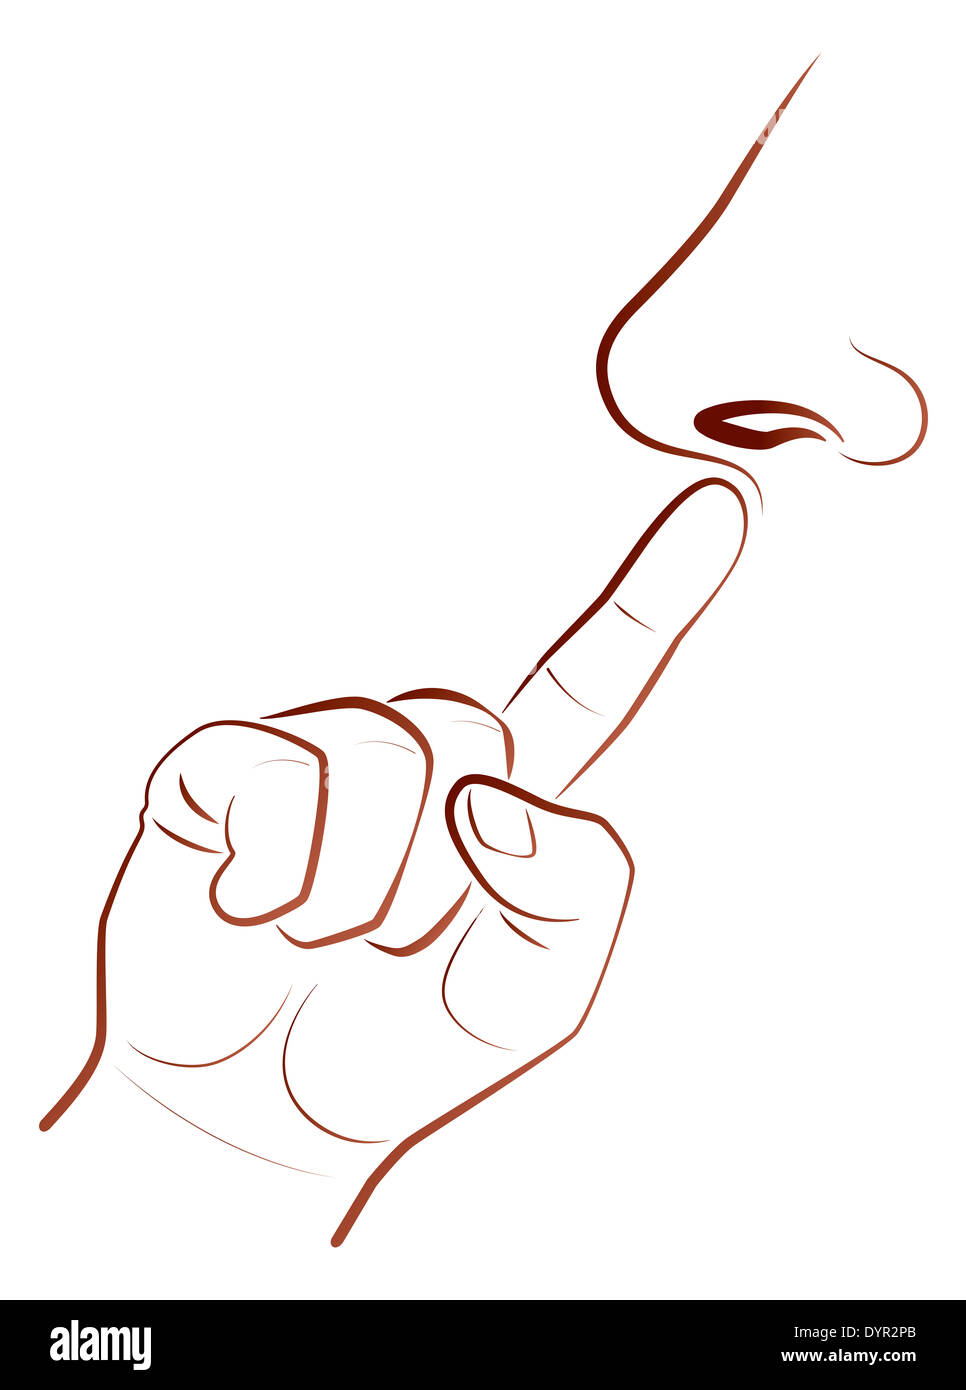 Abbildung einer Nase Kommissionierung Zeigefingers zu skizzieren. Stockfoto